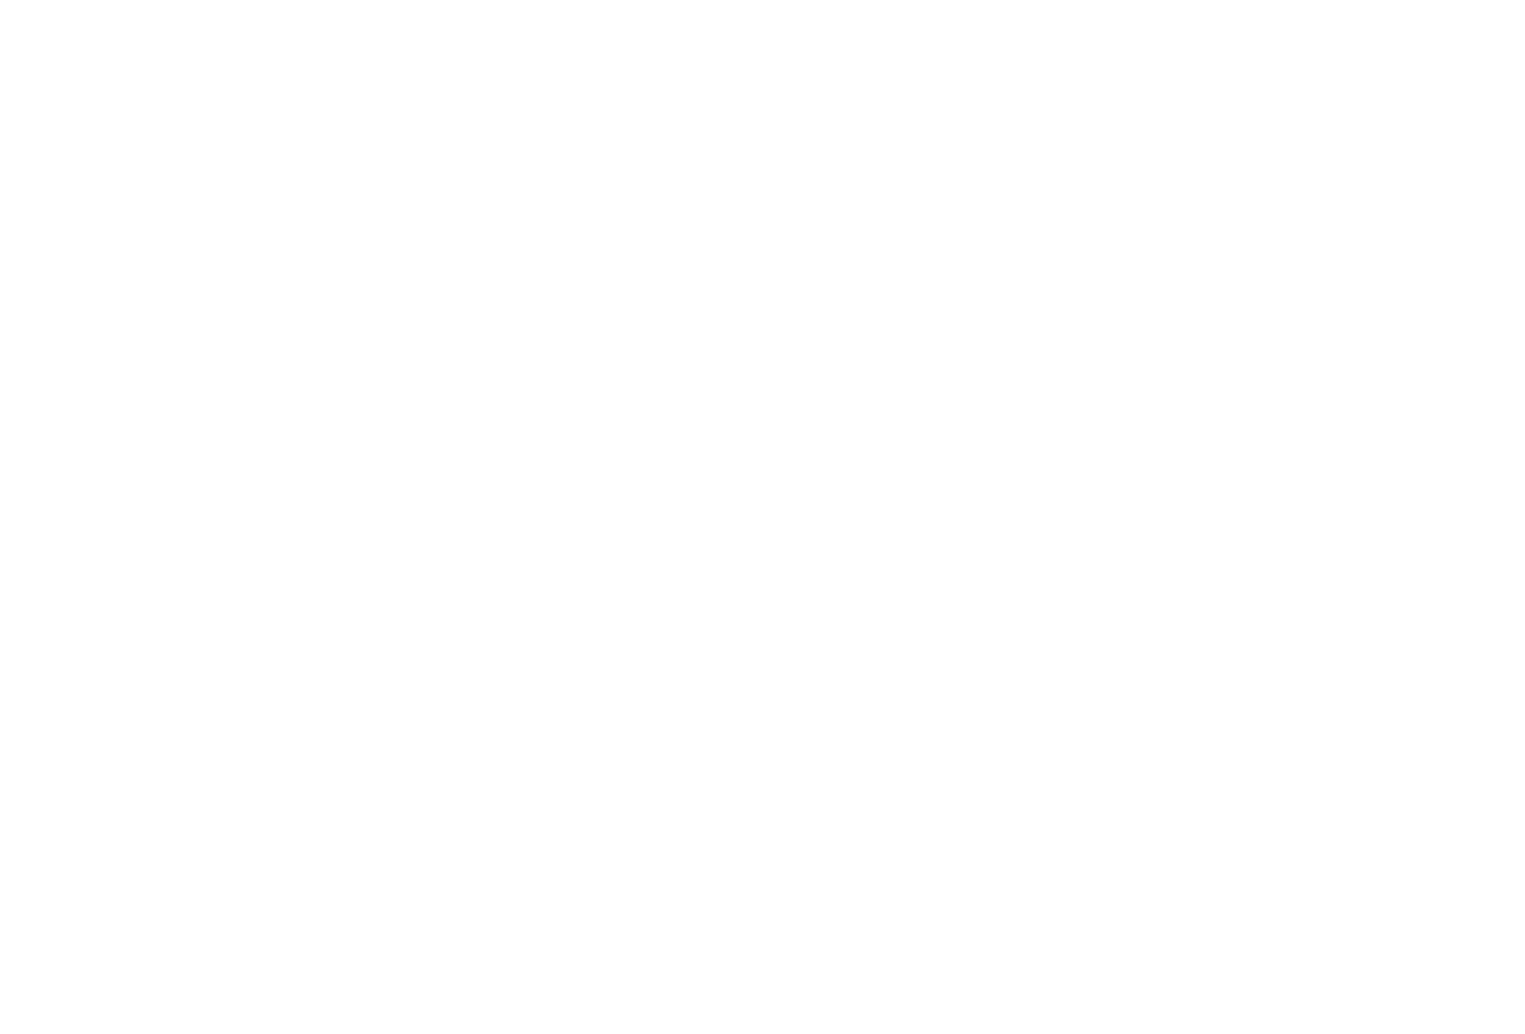 Queen Stars Brazil logo